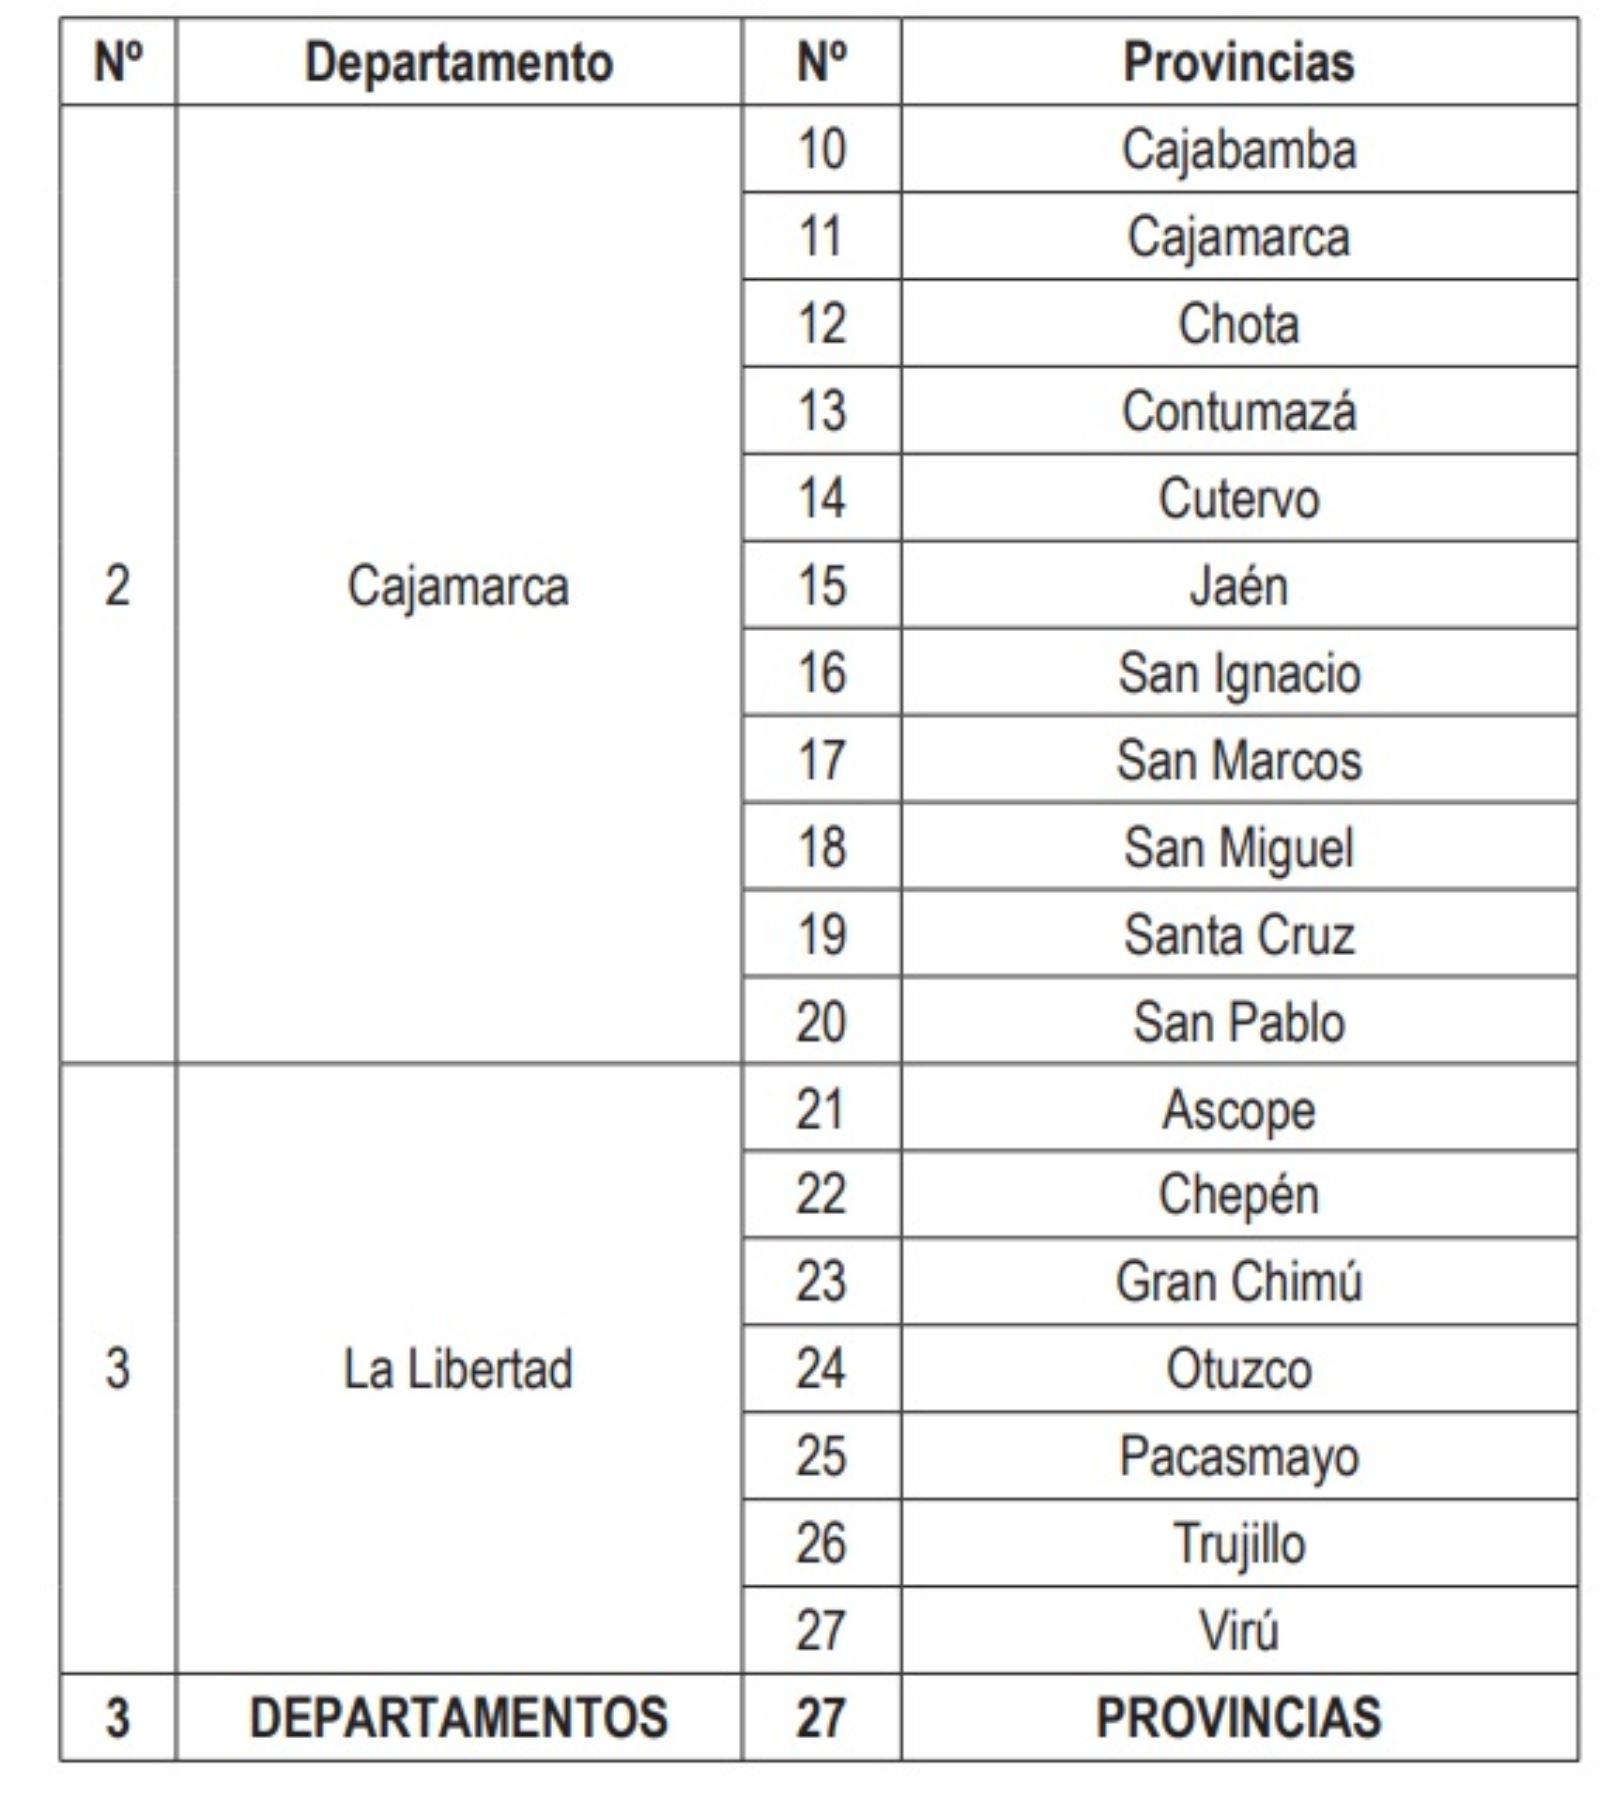 Provincias de las regiones Áncash, Cajamarca y La Libertad, consideradas en la prórroga del estado de emergencia por desastres ocasionados por las intensas lluvias.